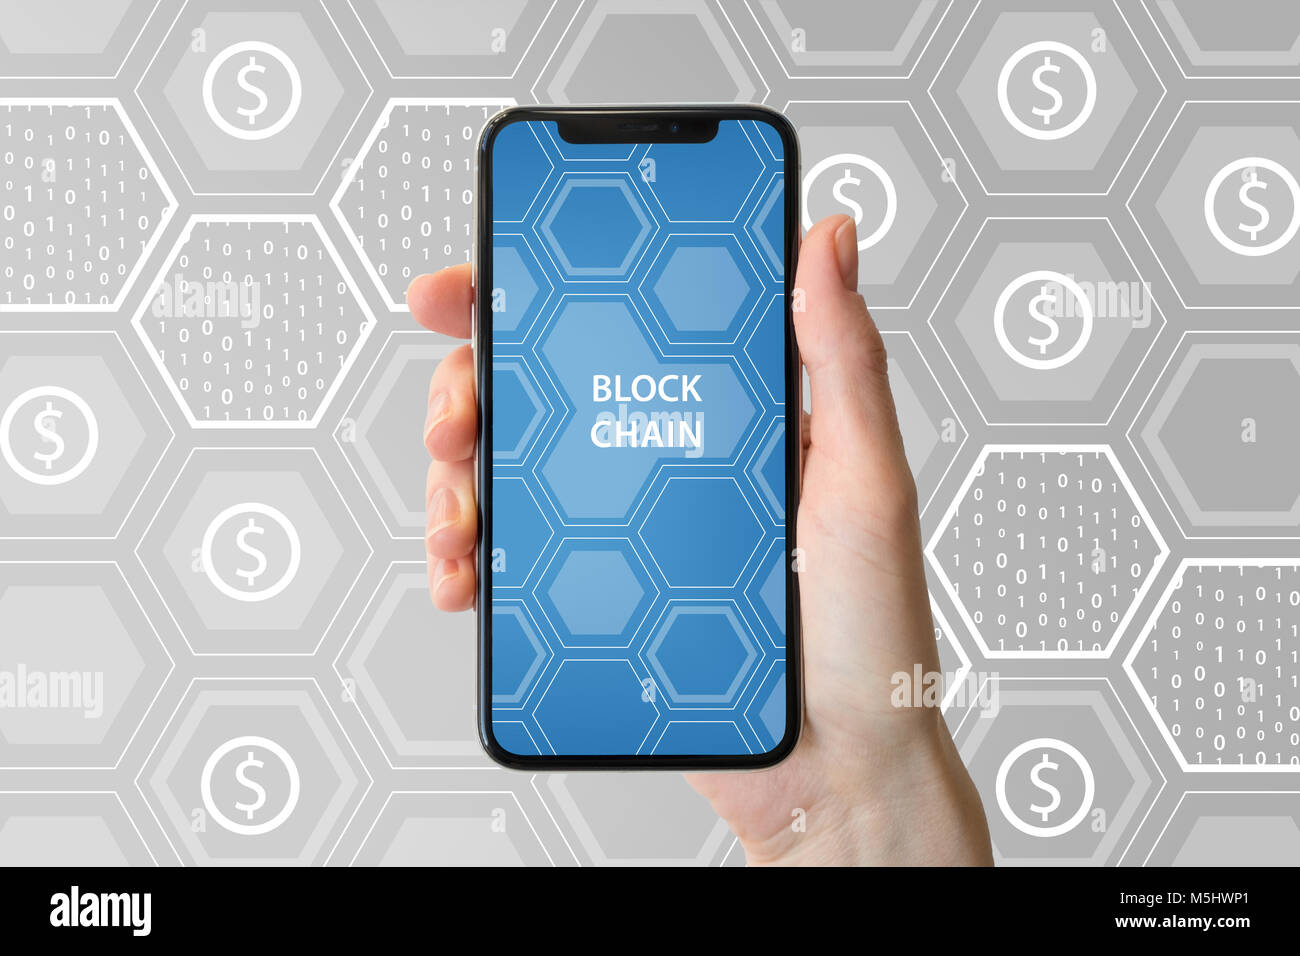 Blockchain cryptocurrency et concept. Main tenant cadre moderne-smartphone libre en face de fond neutre. Banque D'Images